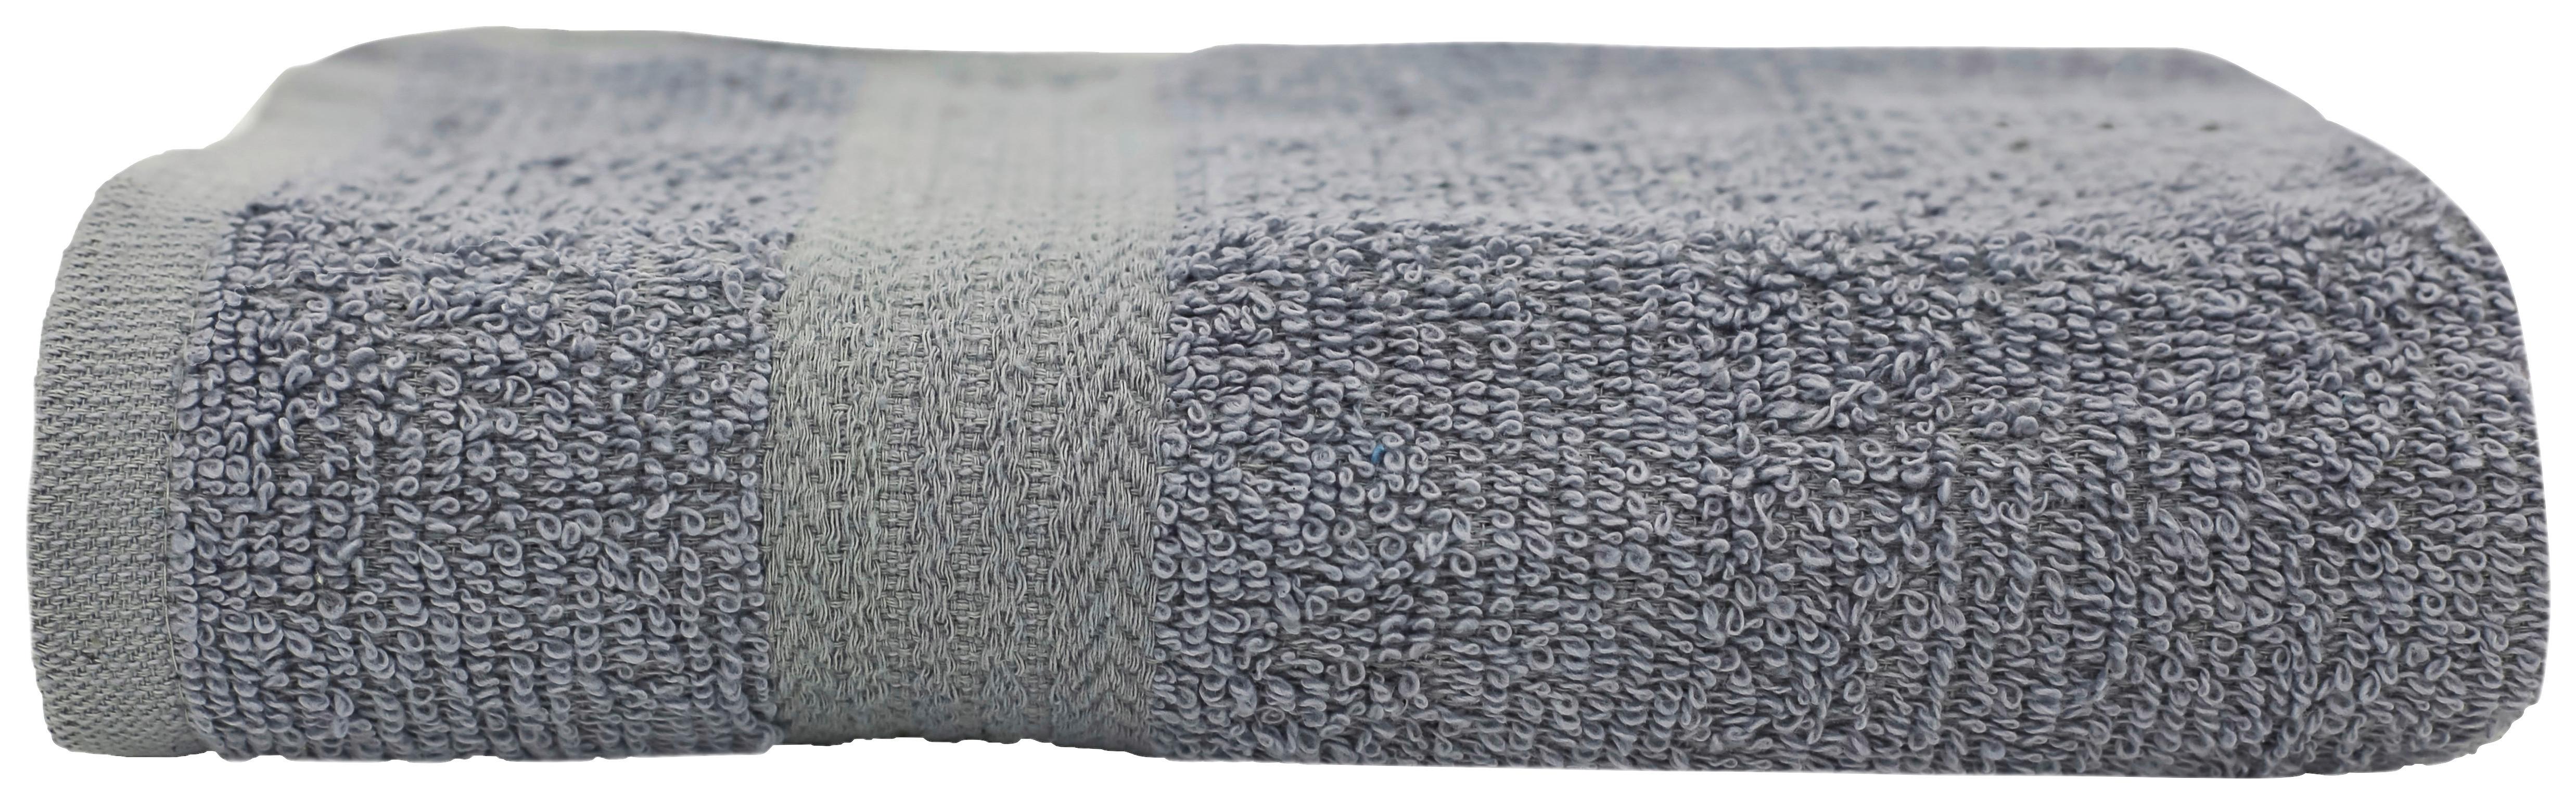 Handtuch Christina Baumwolle / Pes Silberfarben 50x100 cm - Silberfarben, KONVENTIONELL, Textil (50/100cm) - Ondega